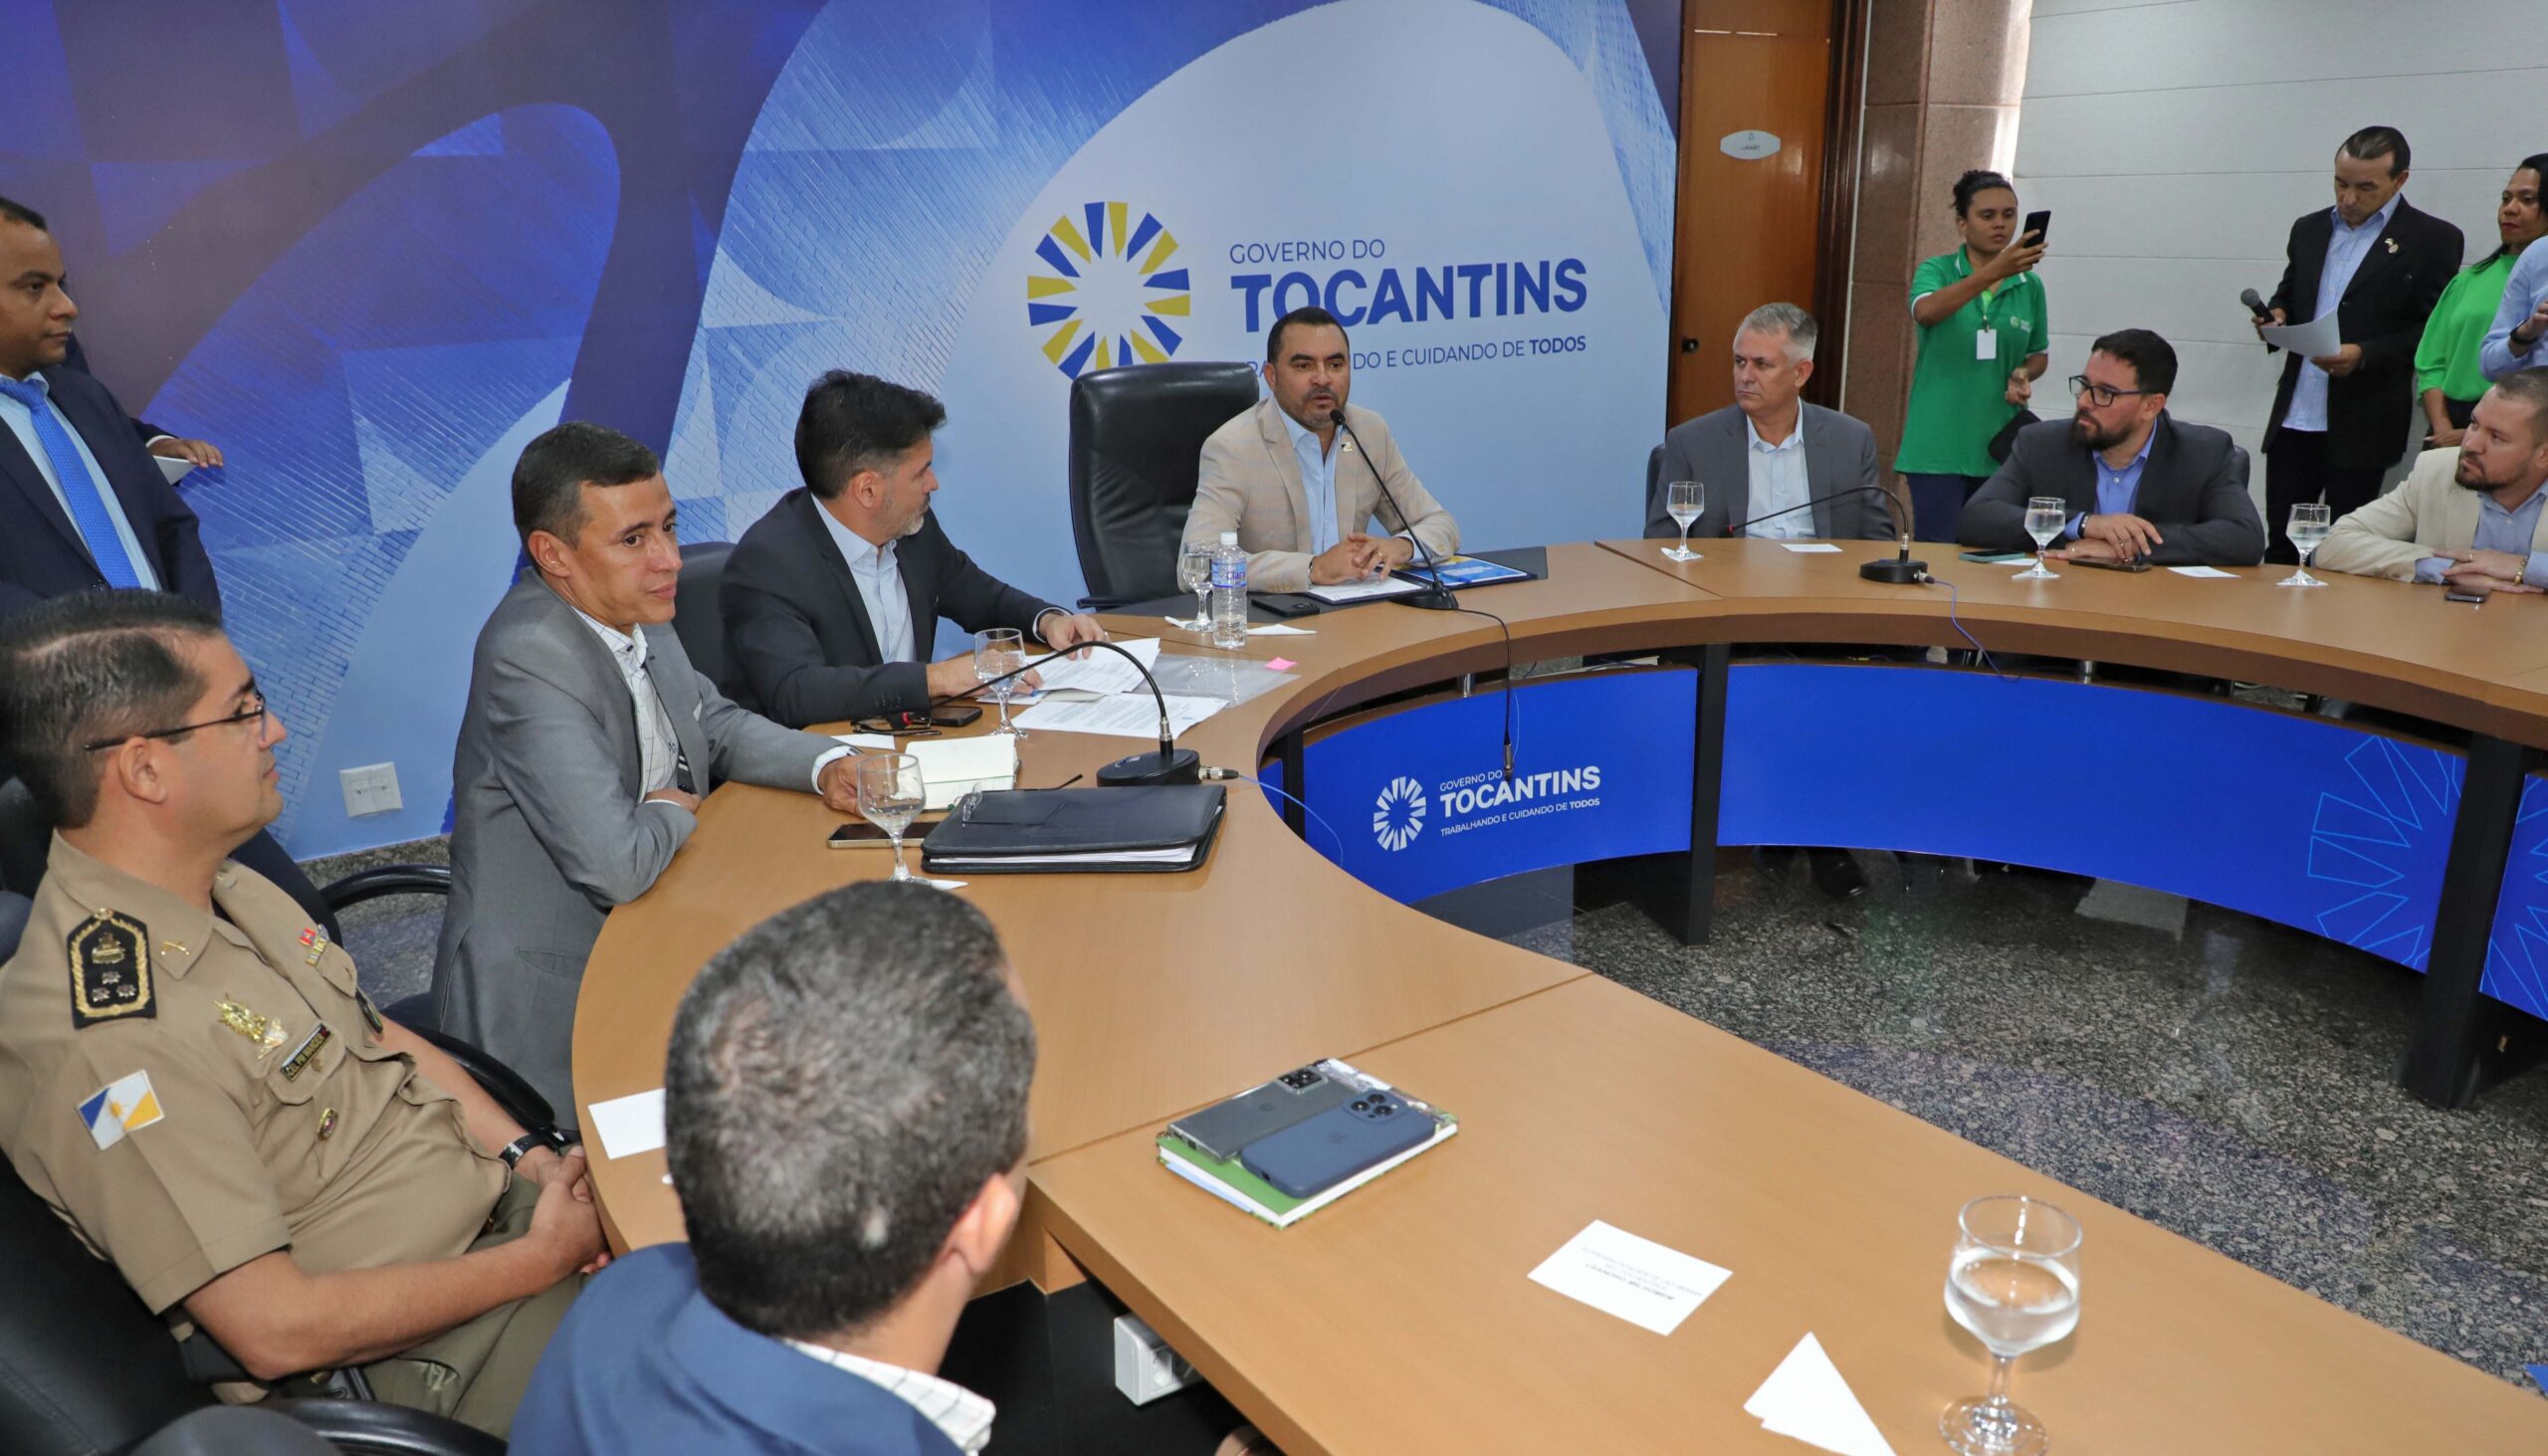 Governador fala sobre a importância do acordo - Foto - Aldemar Ribeiro/Governo do Tocantins